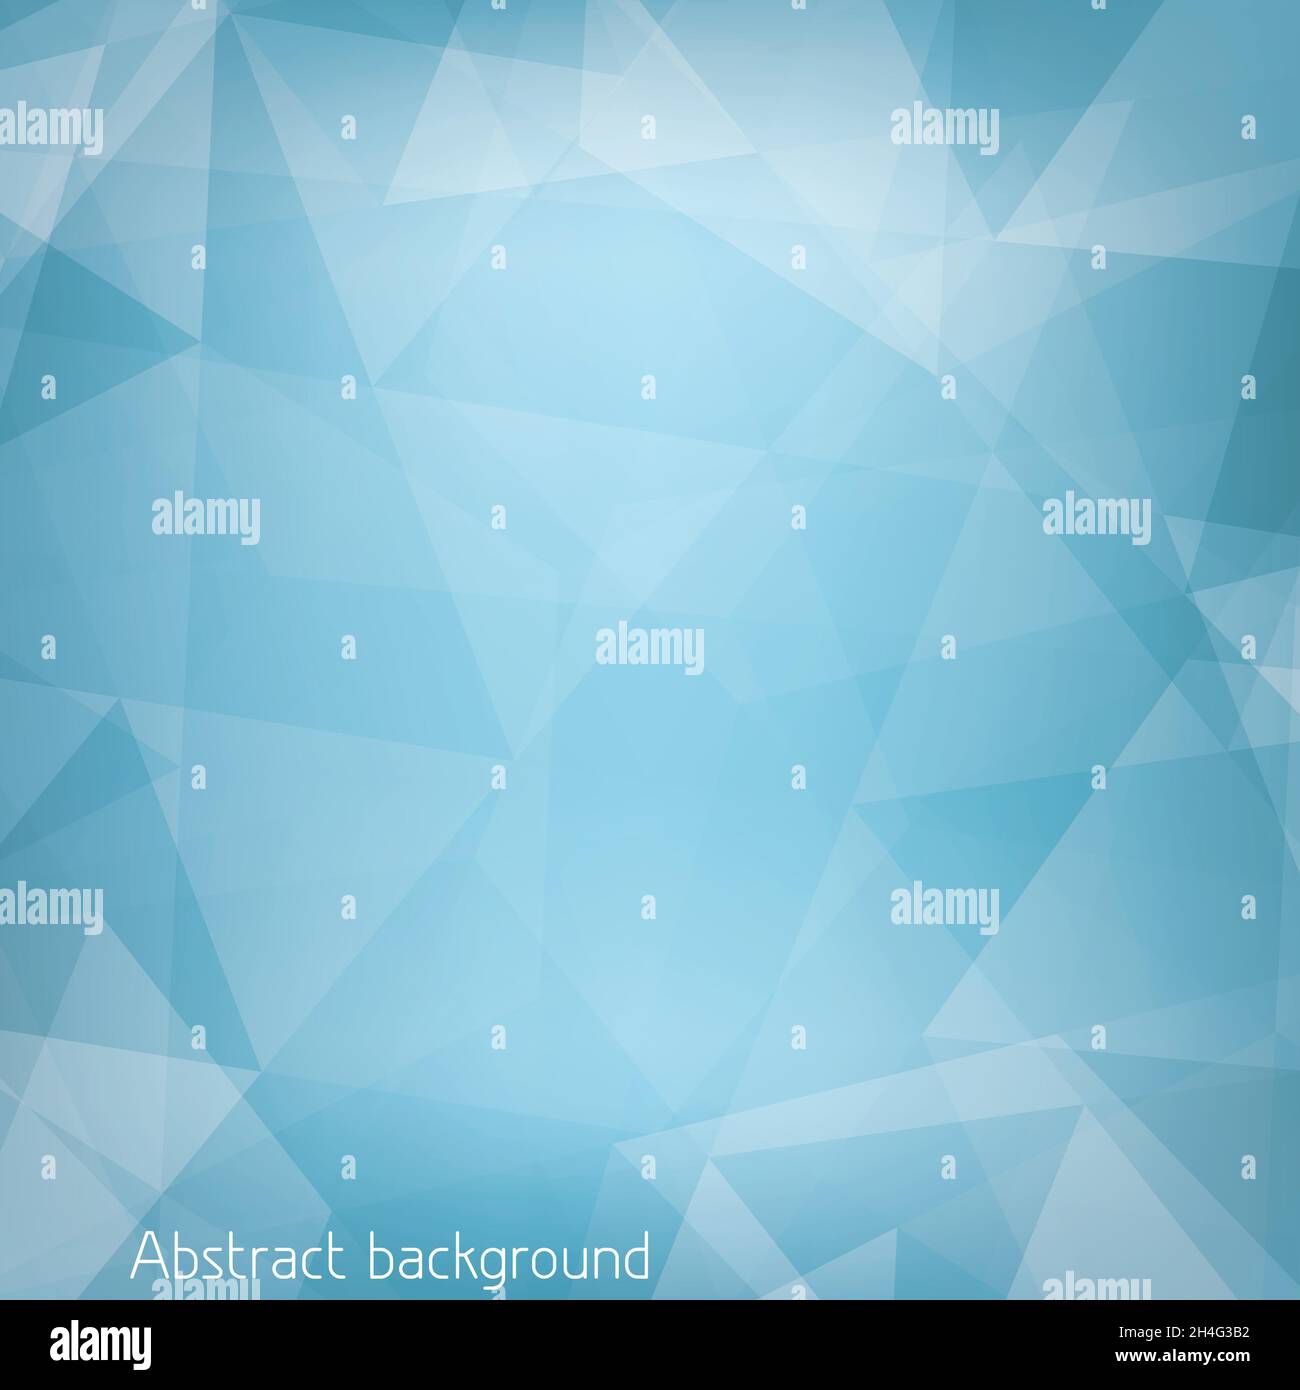 Abstrakter hellblauer Hintergrund, strukturiert durch Dreiecke. CMMK-Farbmodus. Geometrisches Vektormuster Stock Vektor